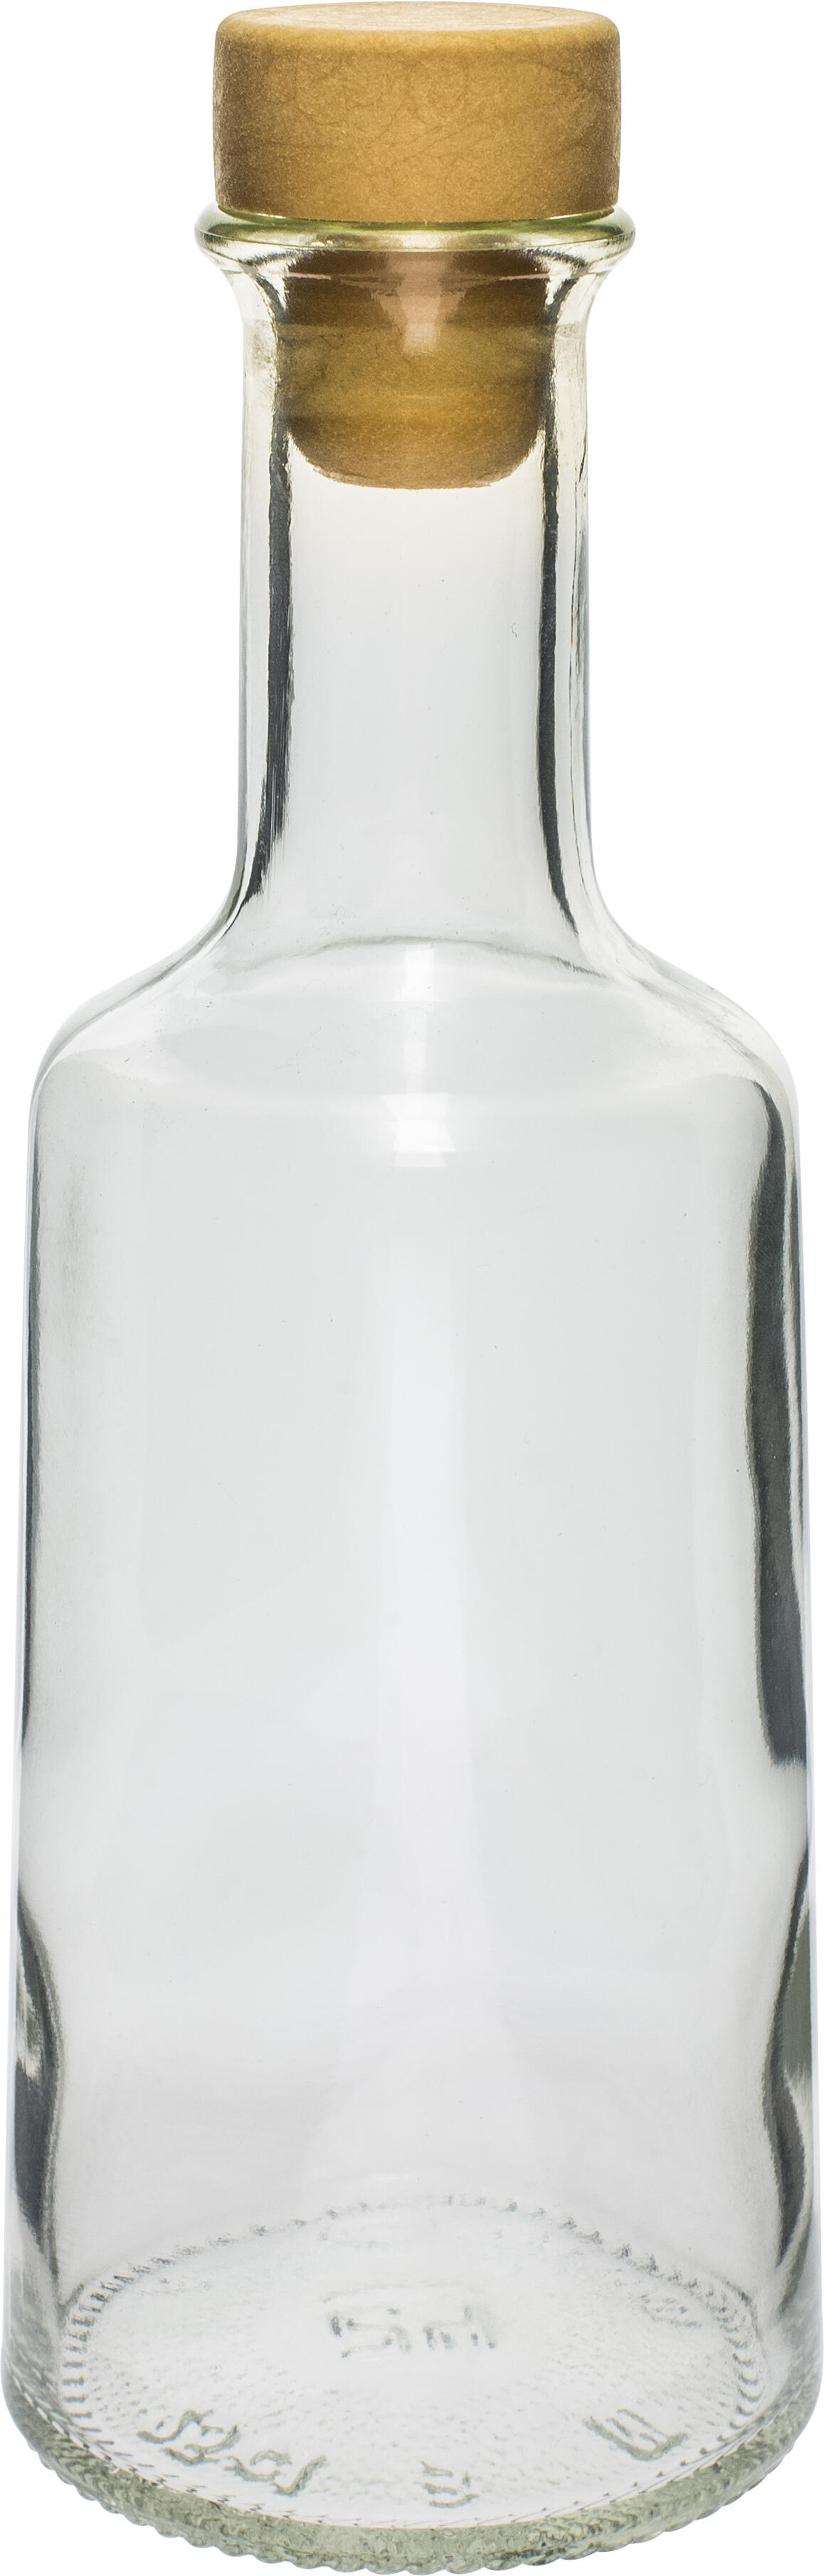 láhev 250ml ROSA skleněná se zátkou